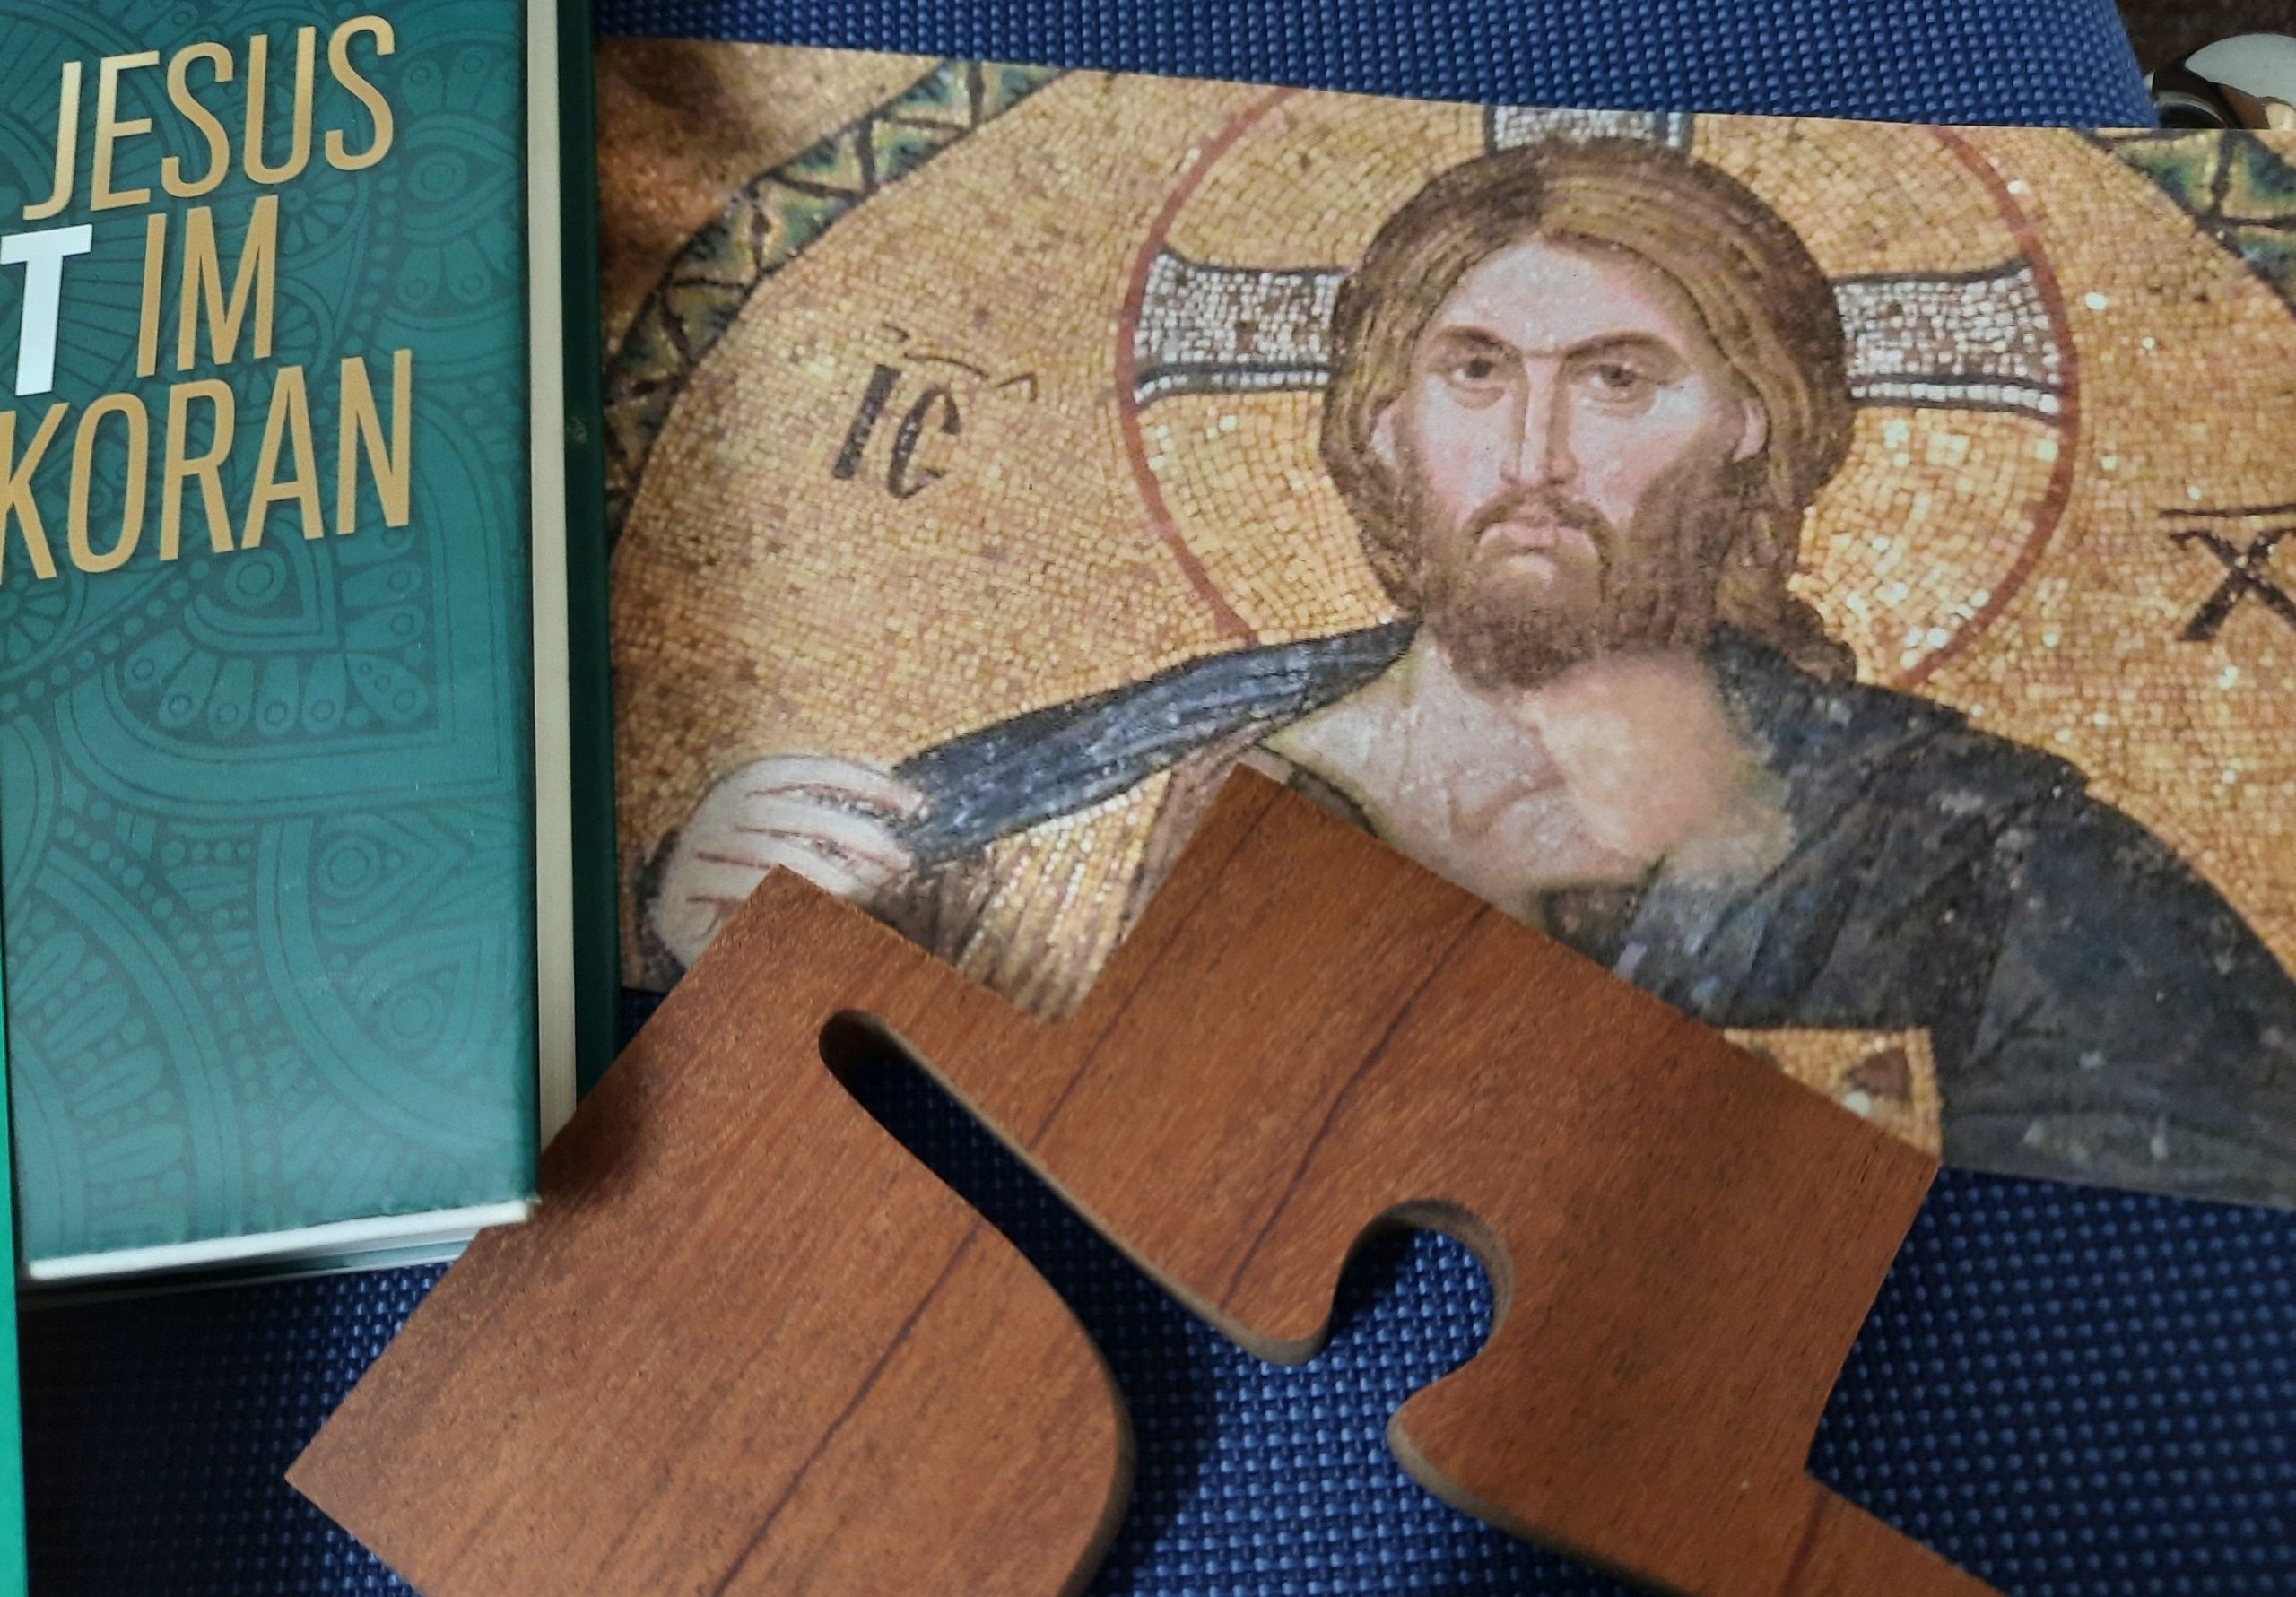 Jesus im Koran - Christliche Wahrnehmungen, muslimisches Verständnis, eine Übung in Differenzsensibiltät